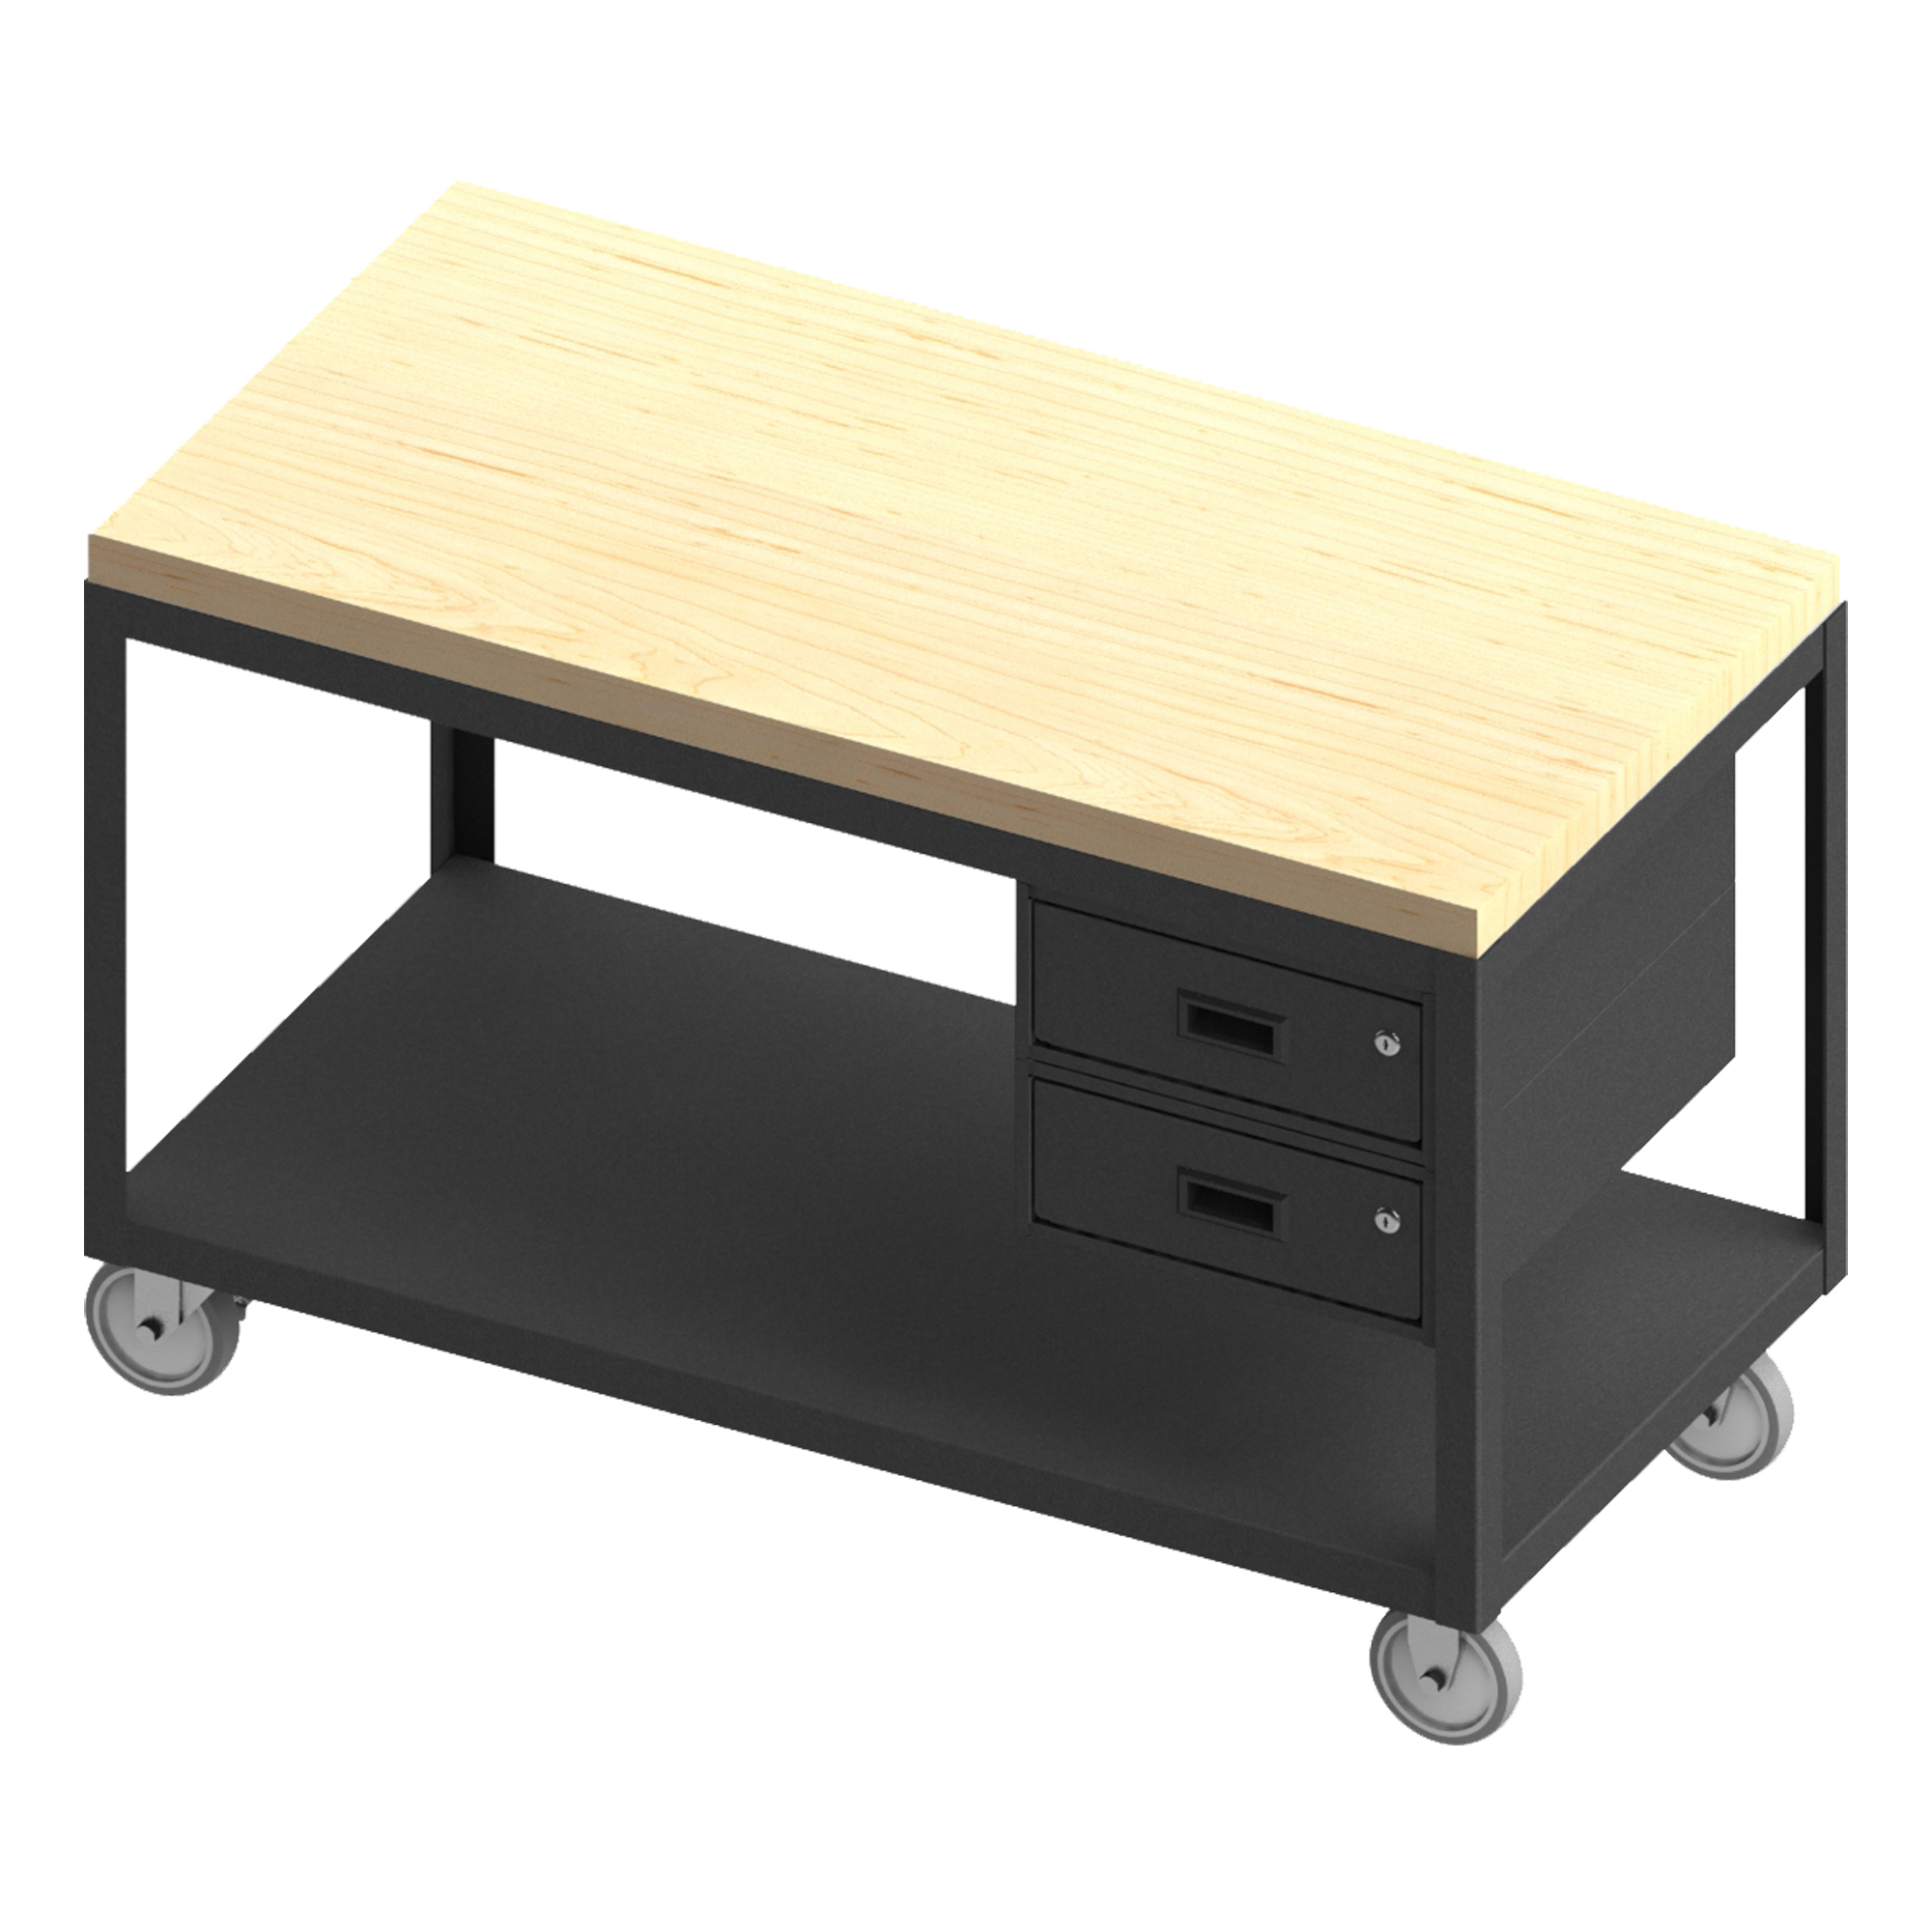 โต๊ะพกพา High Deck Maple Top ขนาด 24-1/4 x 36-1/4 x 31-13/16 นิ้ว